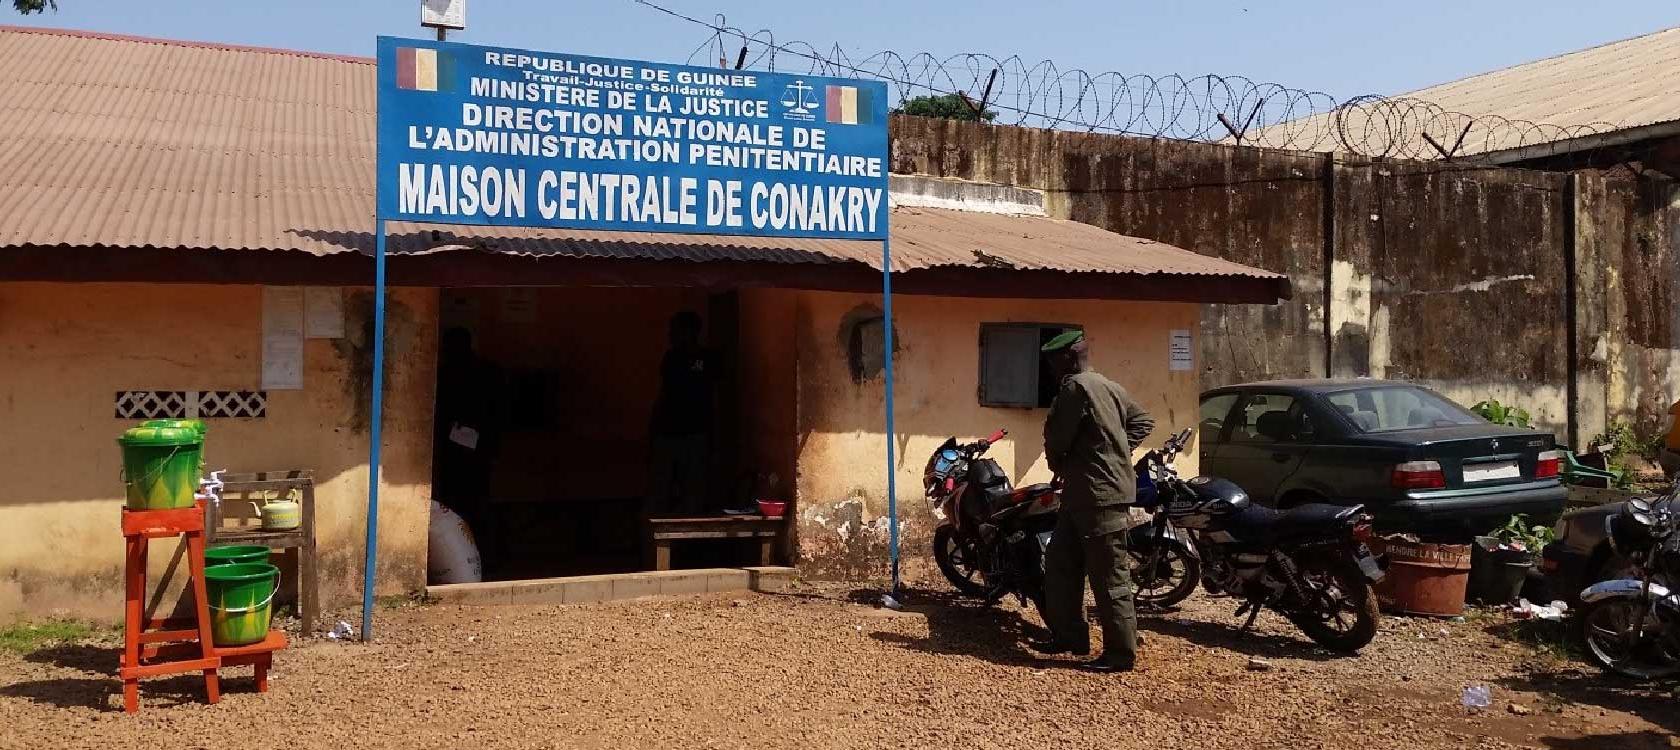 L’AFD accompagne la riposte covid-19 à la maison centrale de Conakry